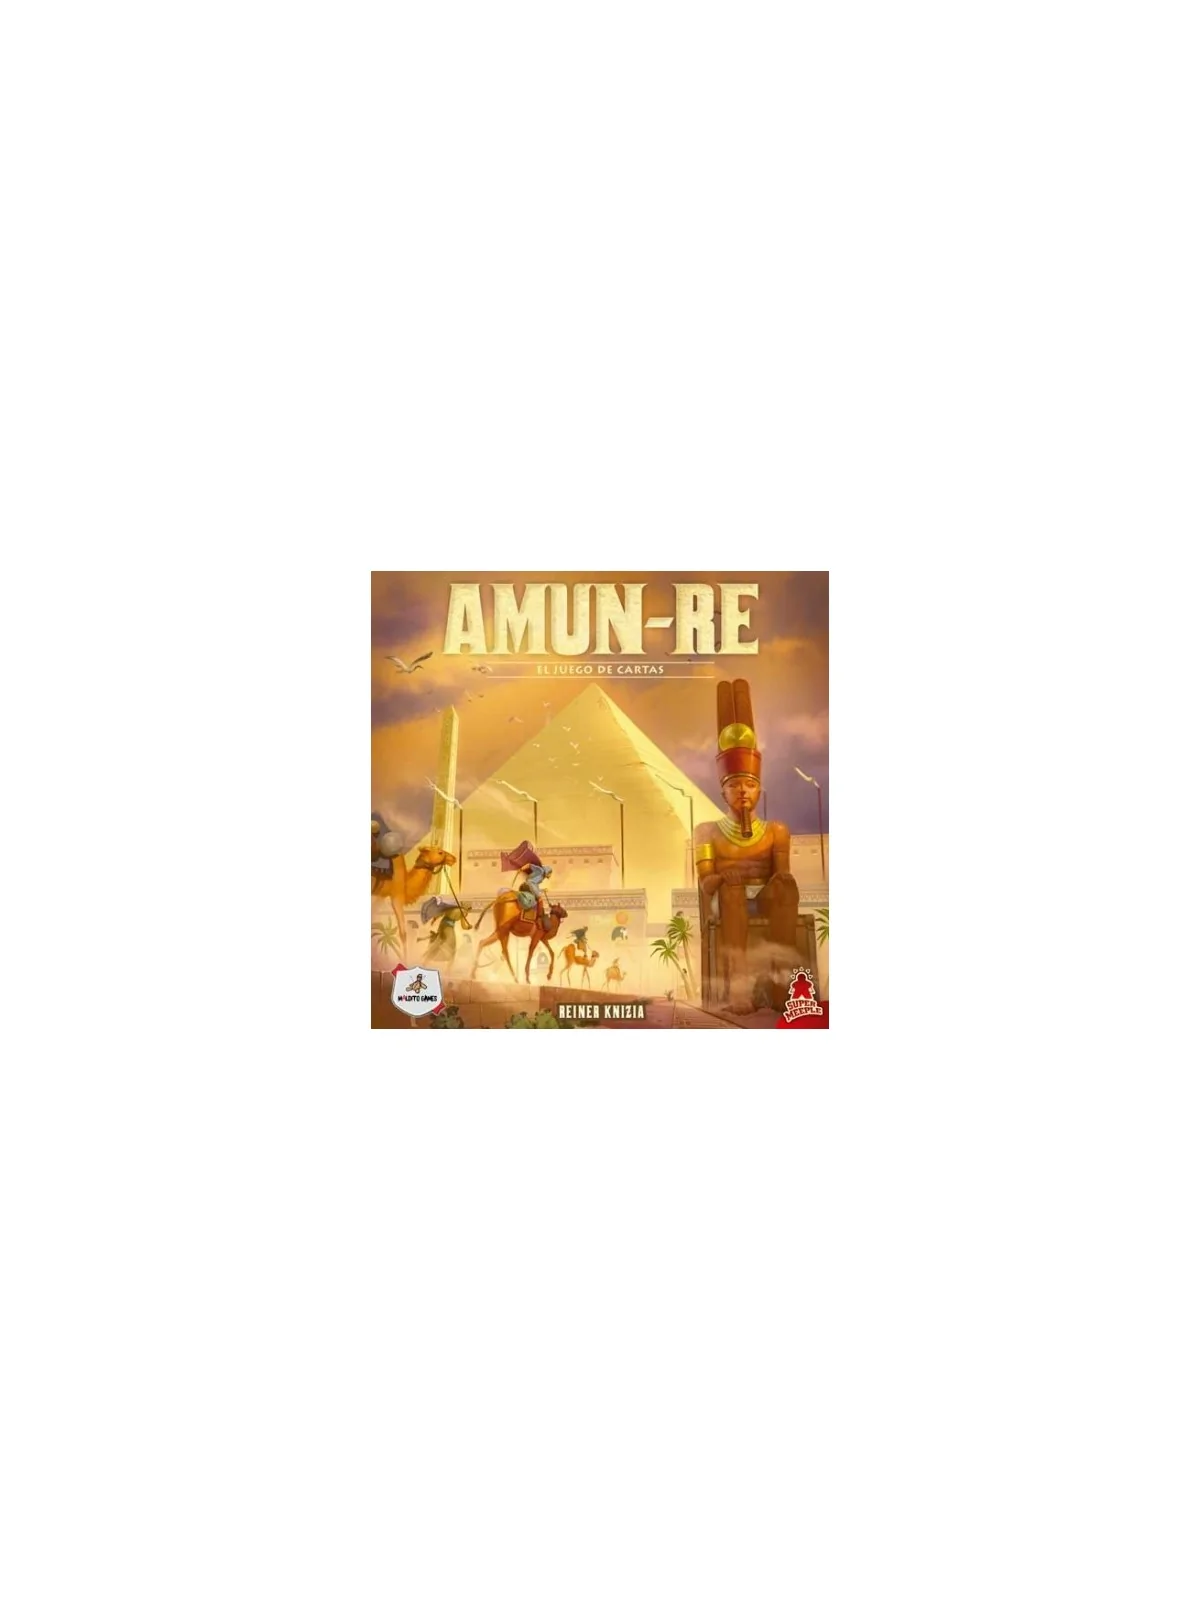 Comprar Amun-Re: El Juego de Cartas barato al mejor precio 18,00 € de 